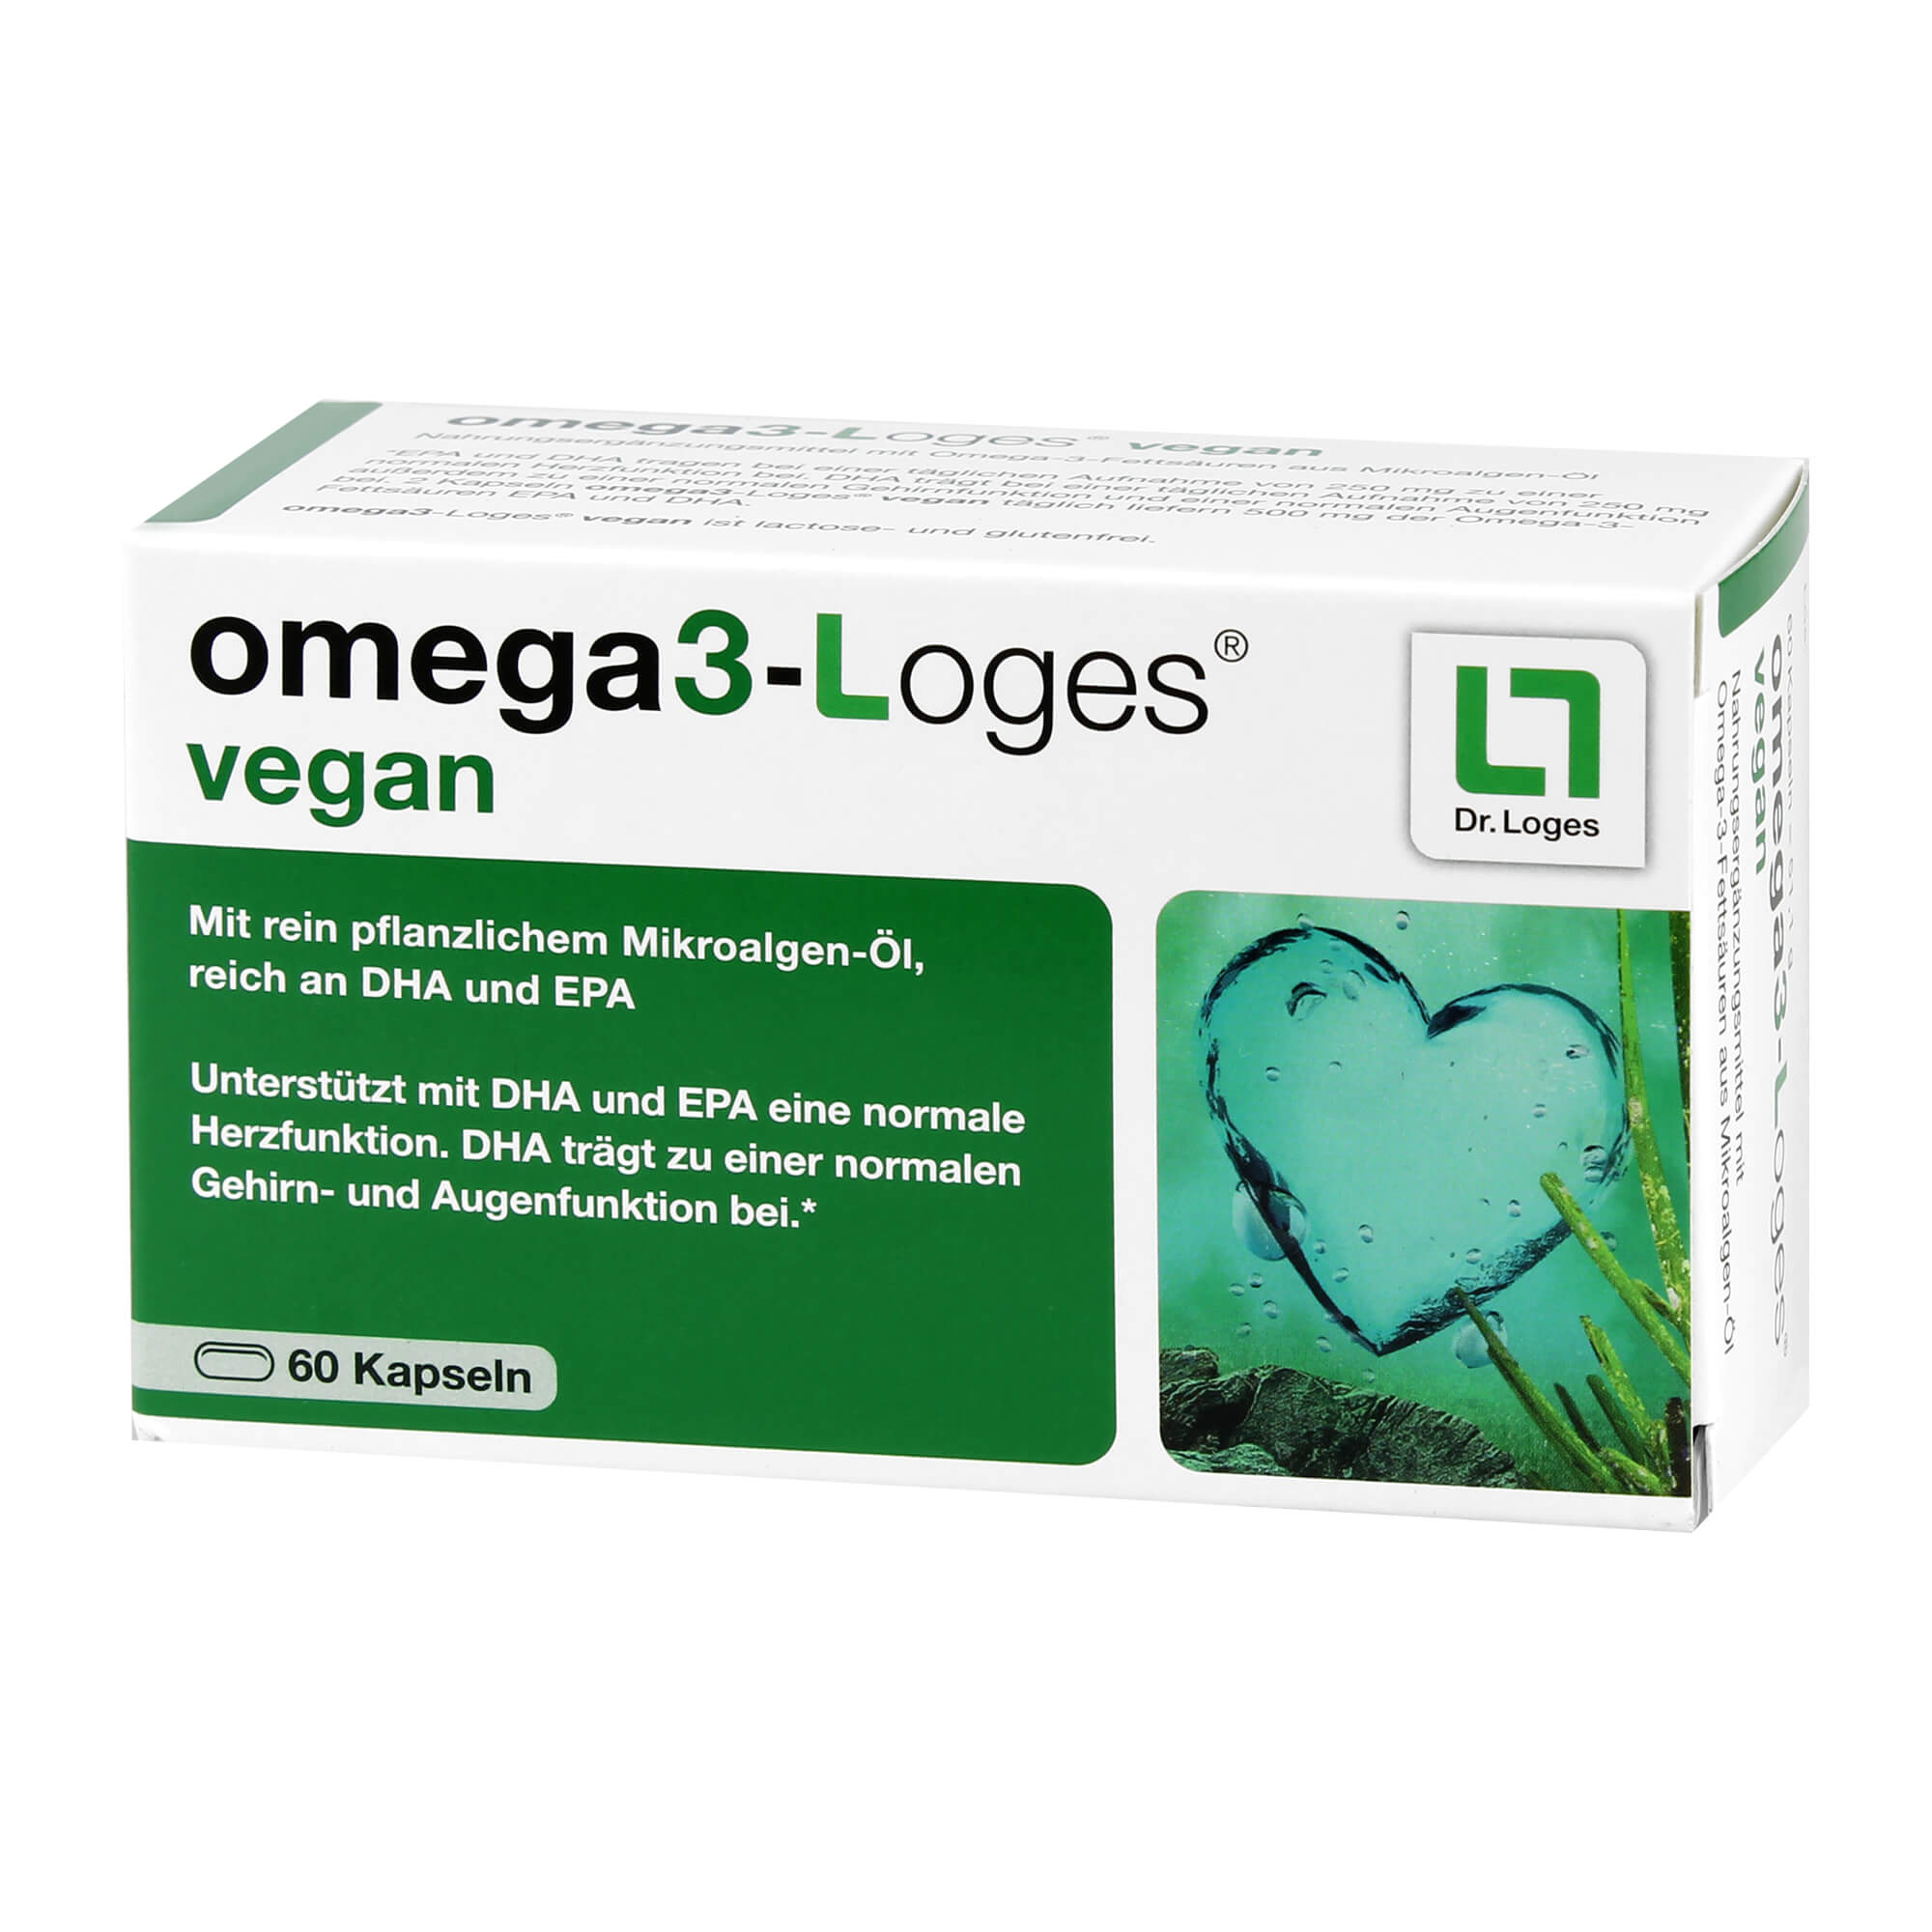 Pflanzliches Nahrungsergänzungsmittel mit Omega-3-Fettsäuren aus Mikroalgen-Öl.